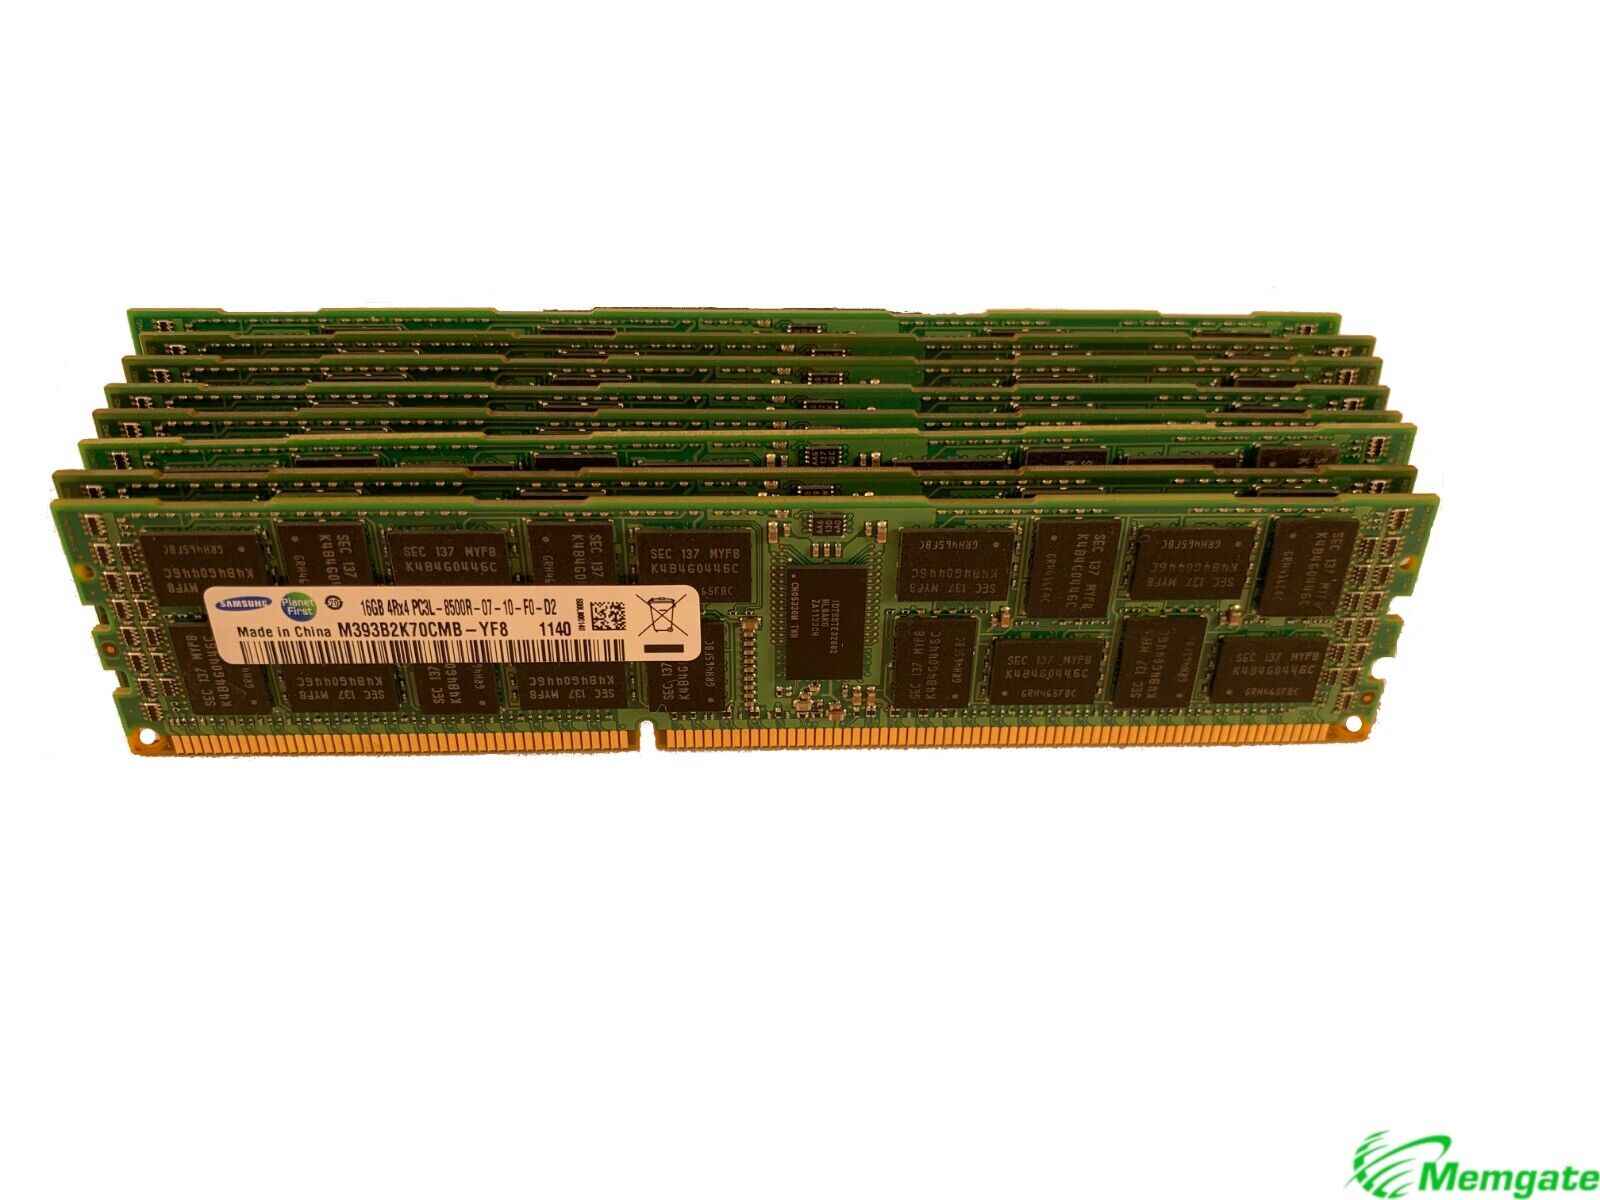 96GB (6 x16GB) Memory For Dell PowerEdge R320 R410 R415 R420 R420XR R510 R515